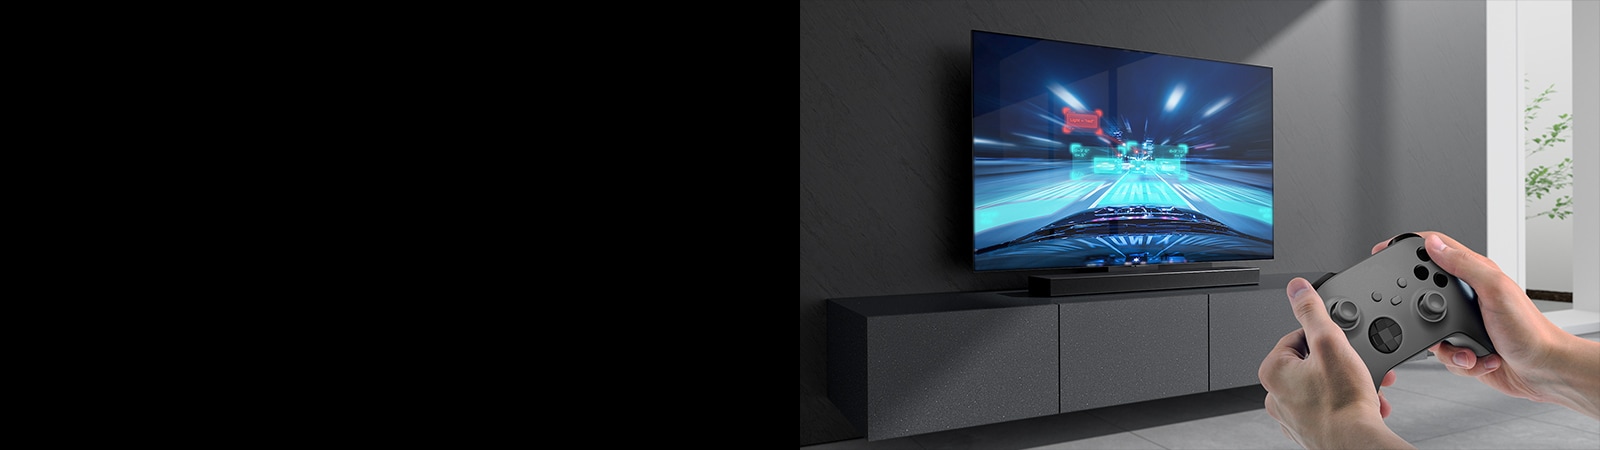 La barra de sonido está colocada sobre el mueble y la escena de un juego de carreras se muestra en el televisor conectado a la barra de sonido. En la parte inferior derecha de la imagen hay una videoconsola sostenida por dos manos. 